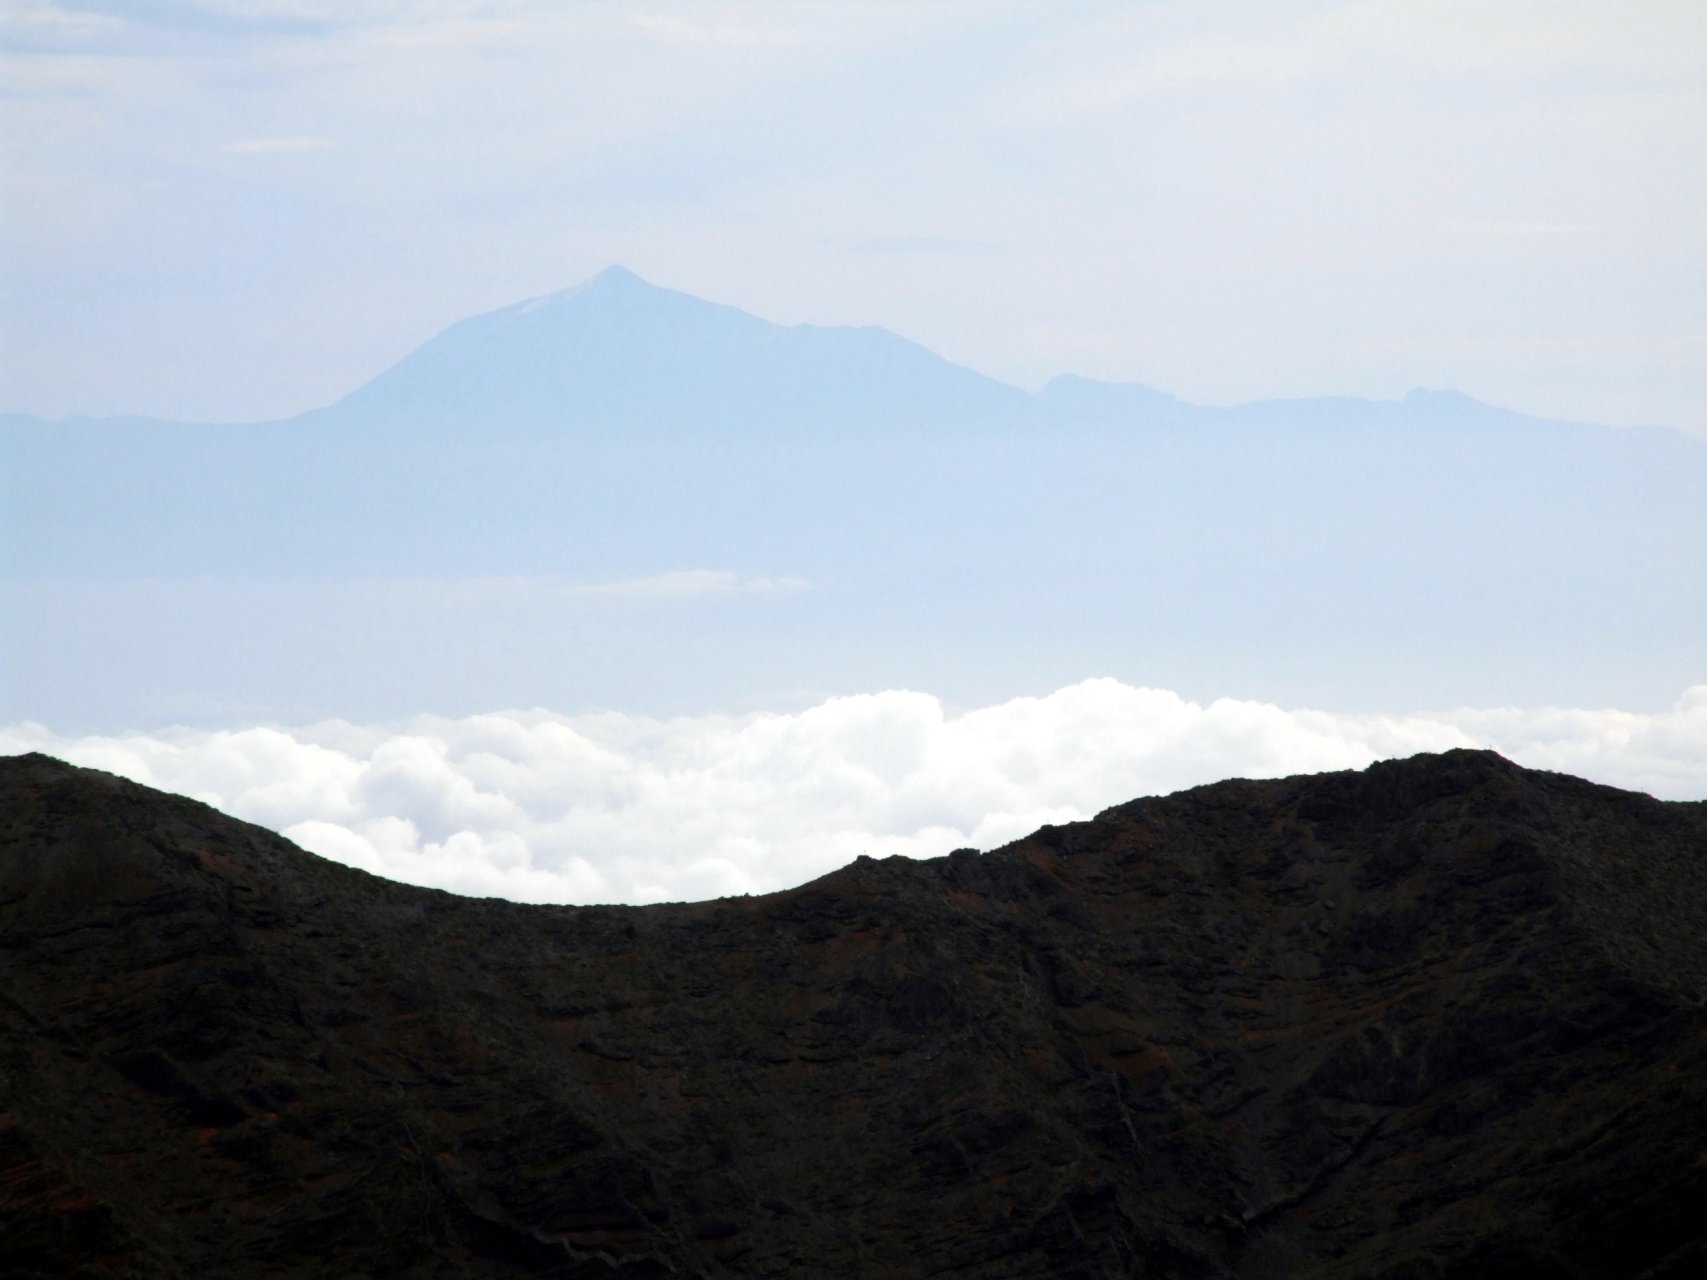 Widok z Roque de los Muchachos na wschód, w tle widoczny szczyt Tejde (Teneryfa)